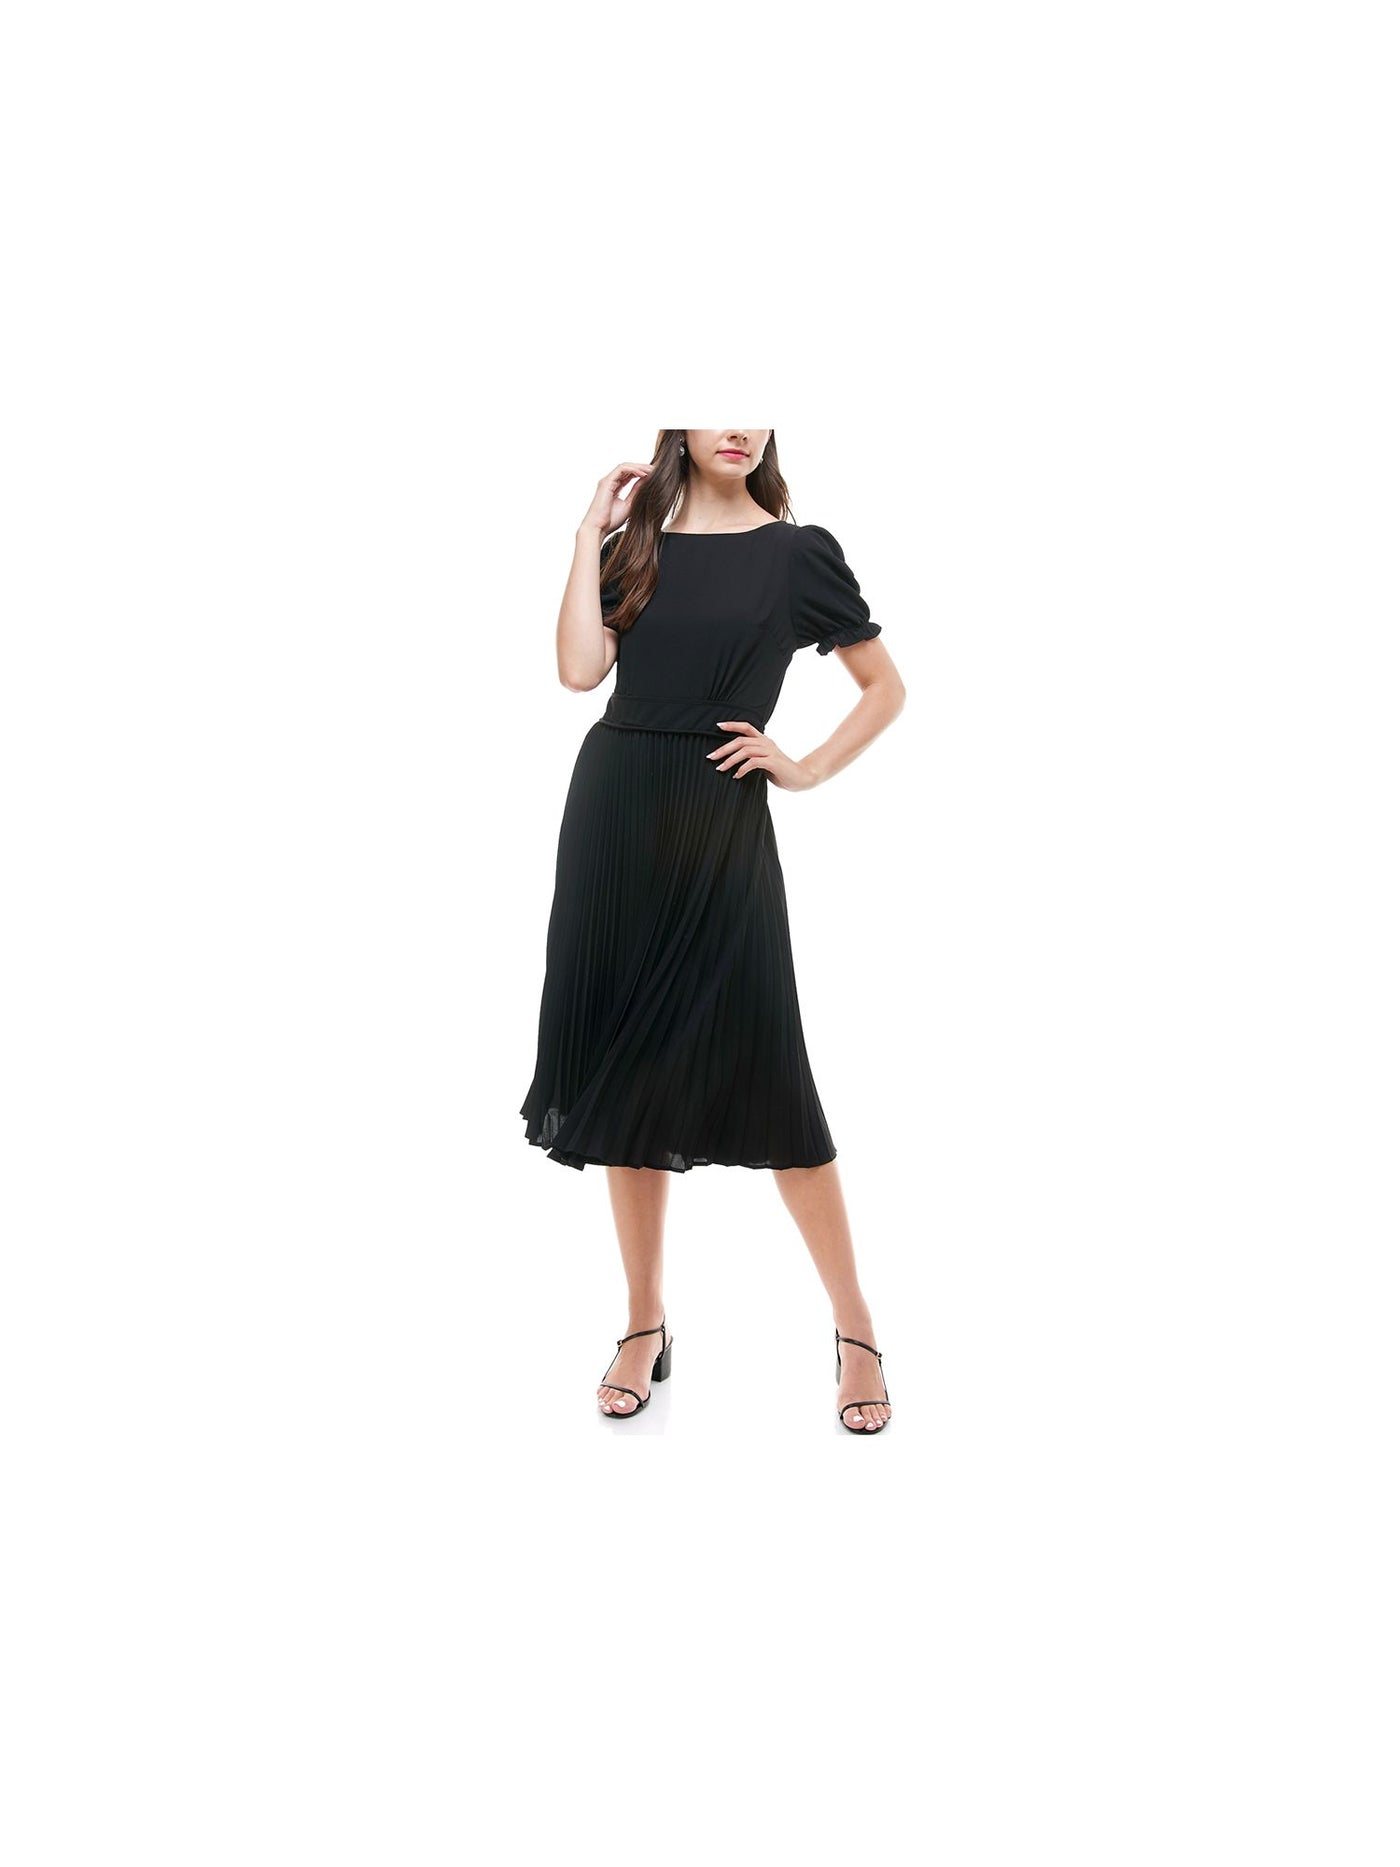 MONTEAU Womens Black Pleated Pouf Boat Neck Midi A-Line Dress Petites Size: PXL